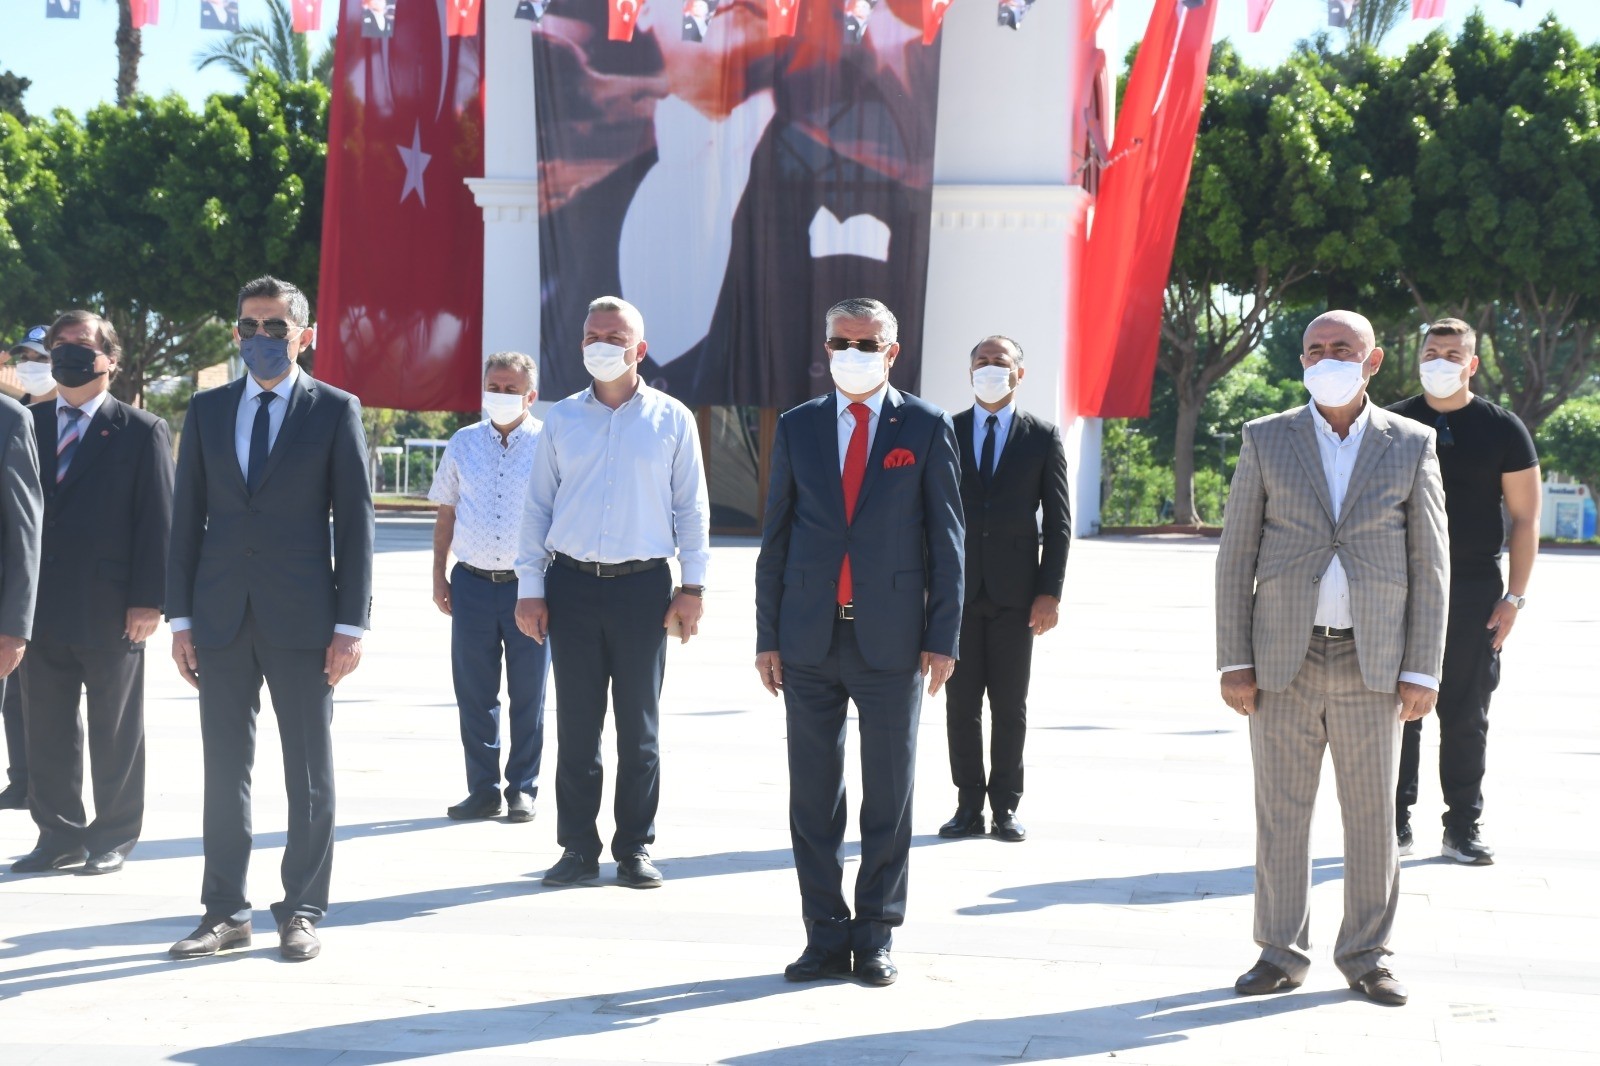  Kemer Cumhuriyet Meydanında 19 Mayıs dolayısıyla tören düzenlendi